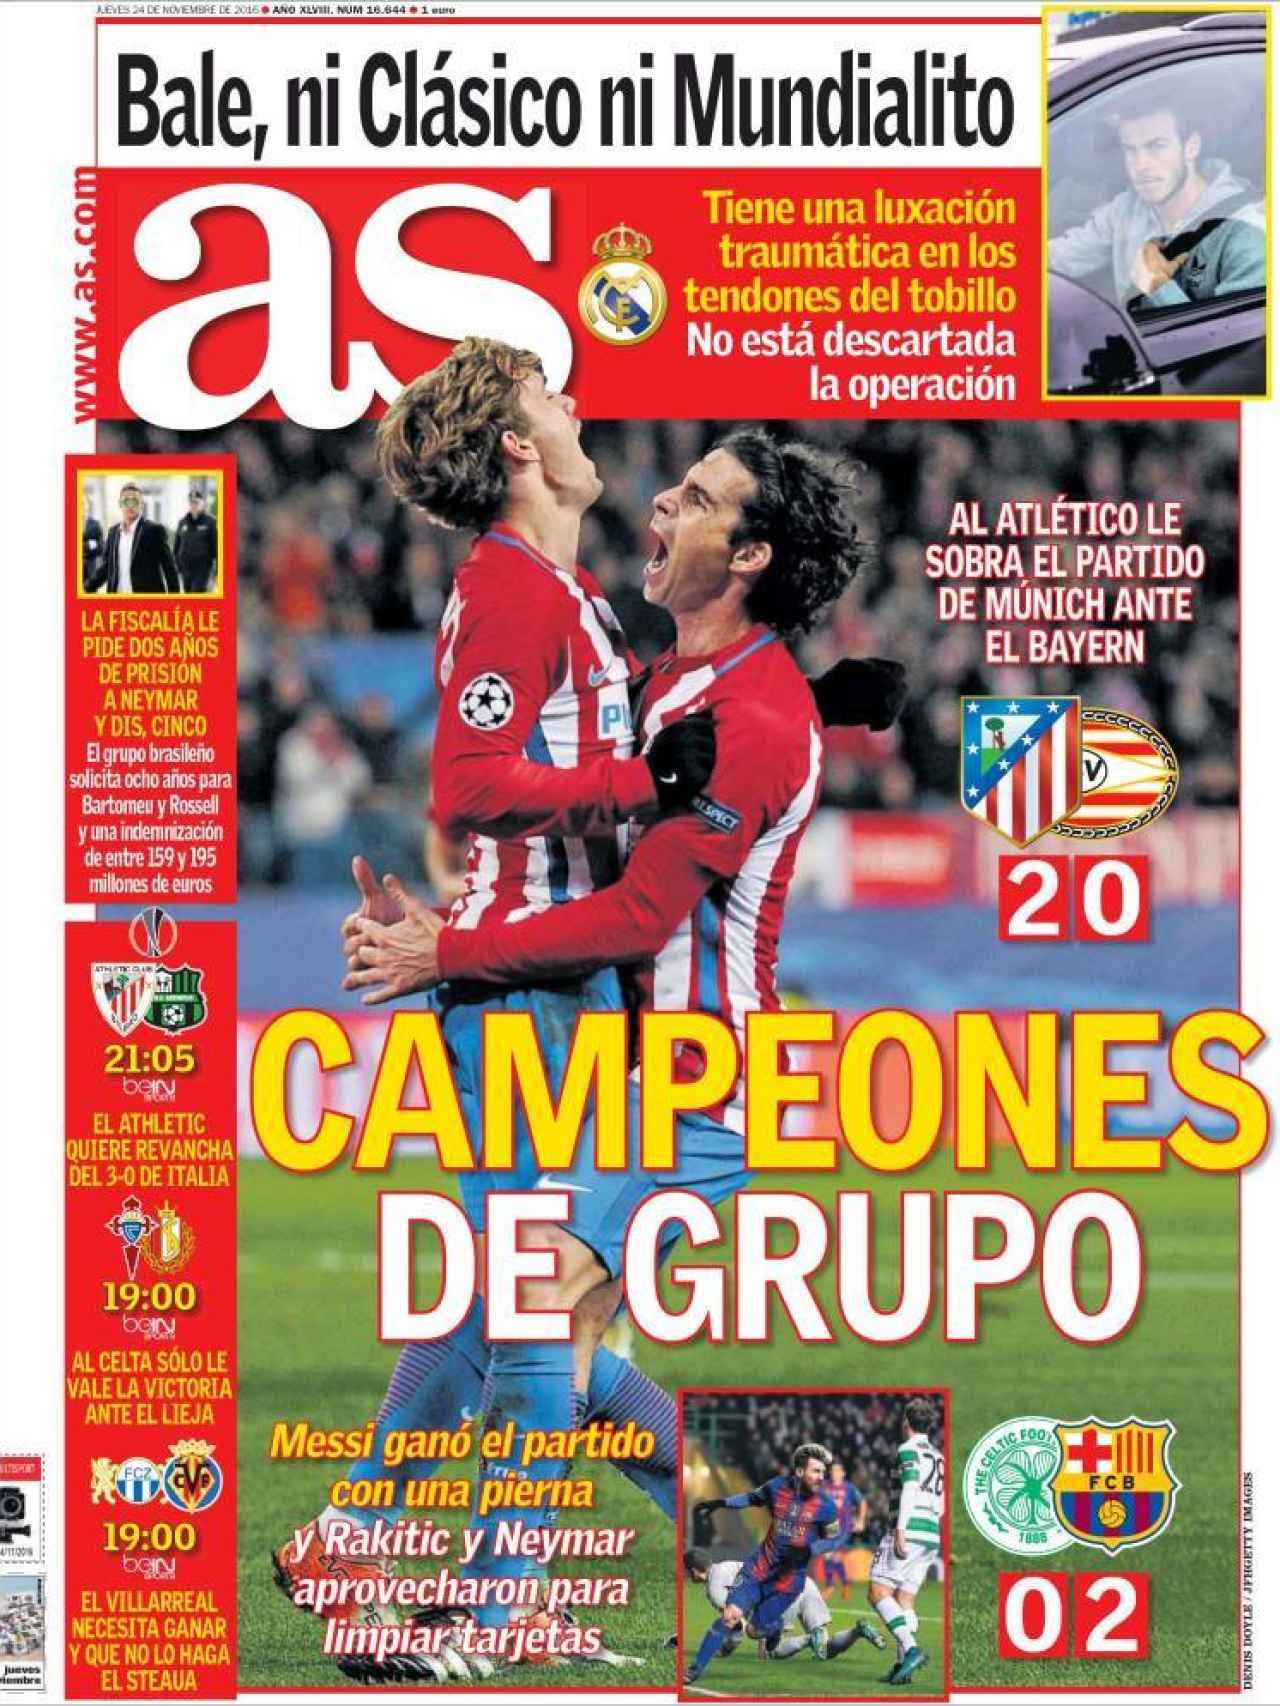 AS destaca la victoria del Atlético, que les hace matemáticamente campeones de su grupo en Champions.